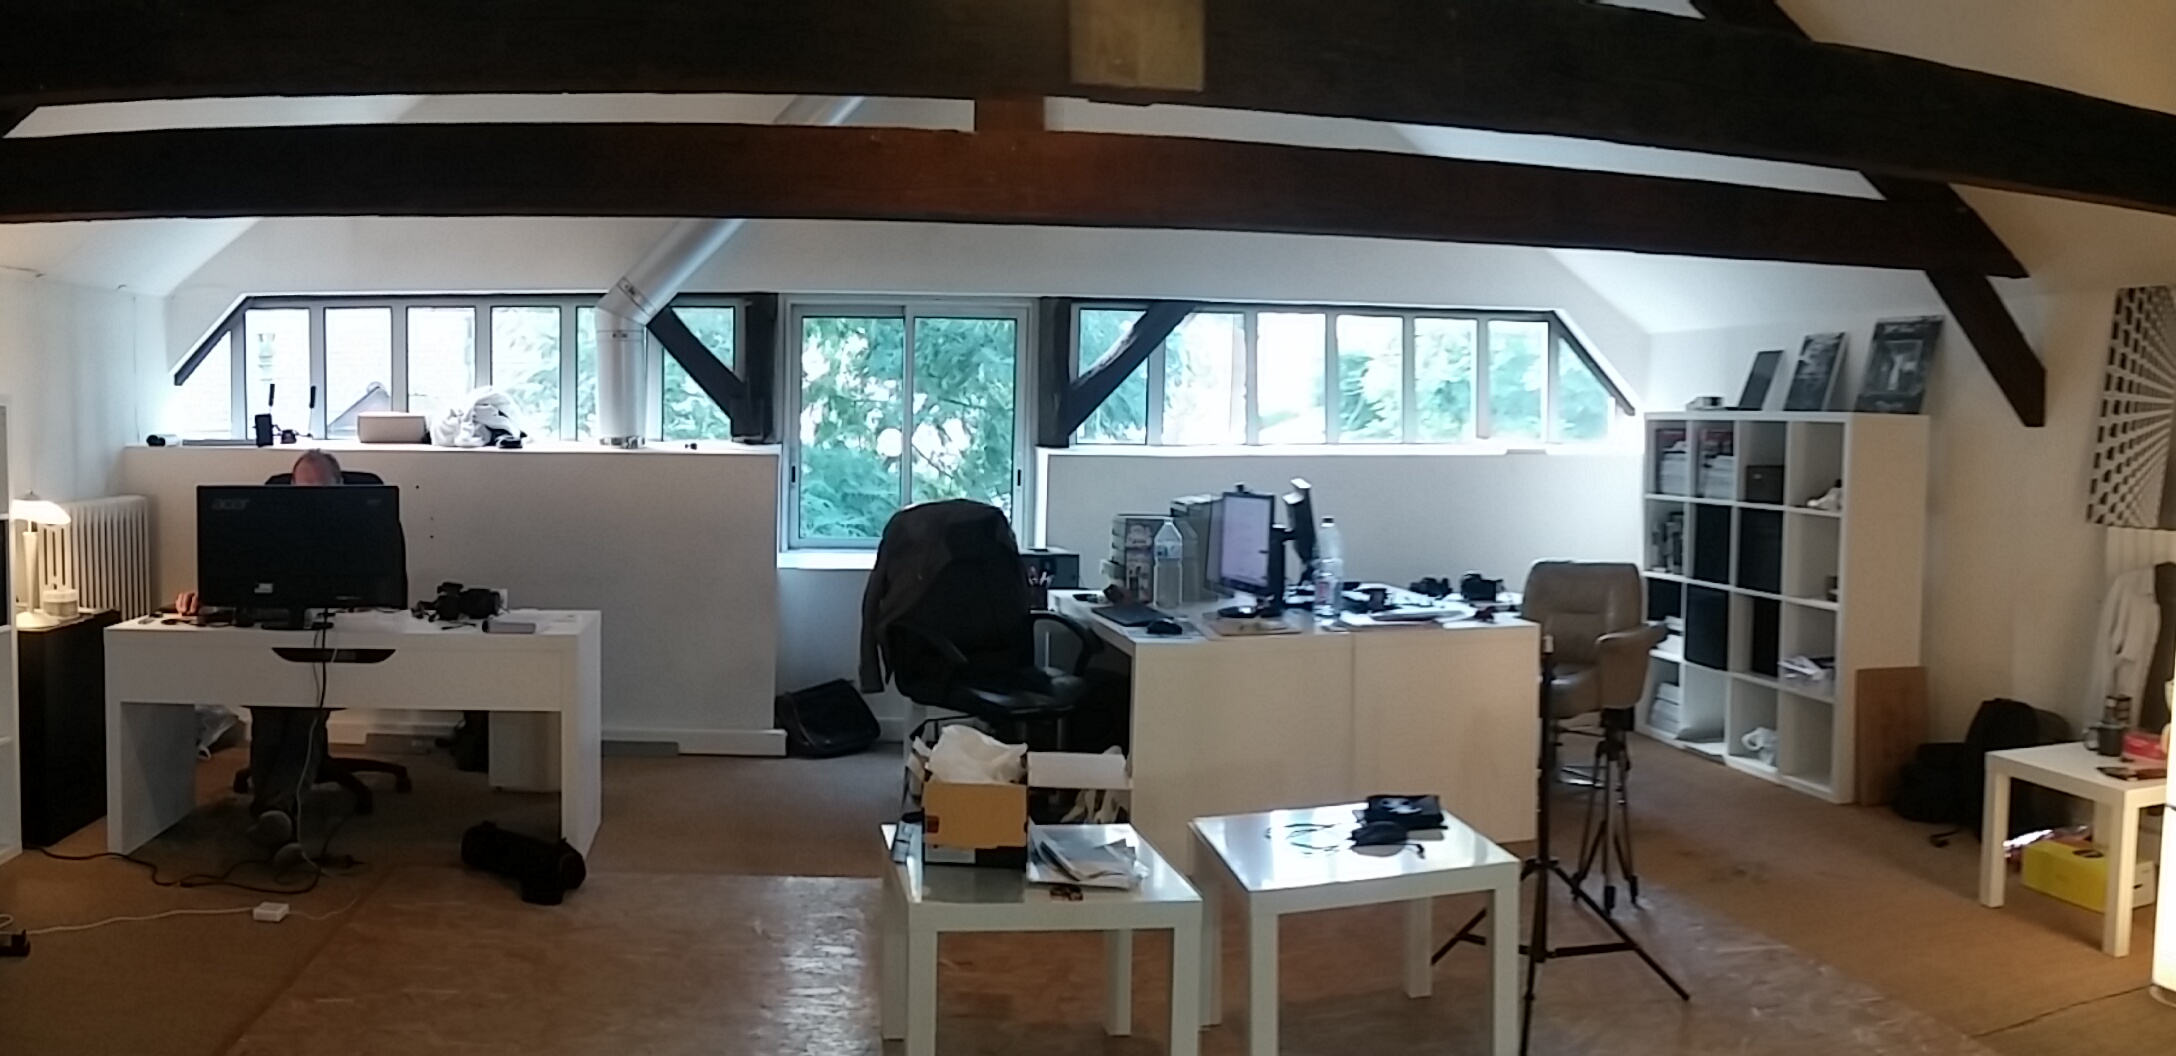 Nous vous recevons dans notre studio, 'Le 10', situé à Rennes, en centre ville